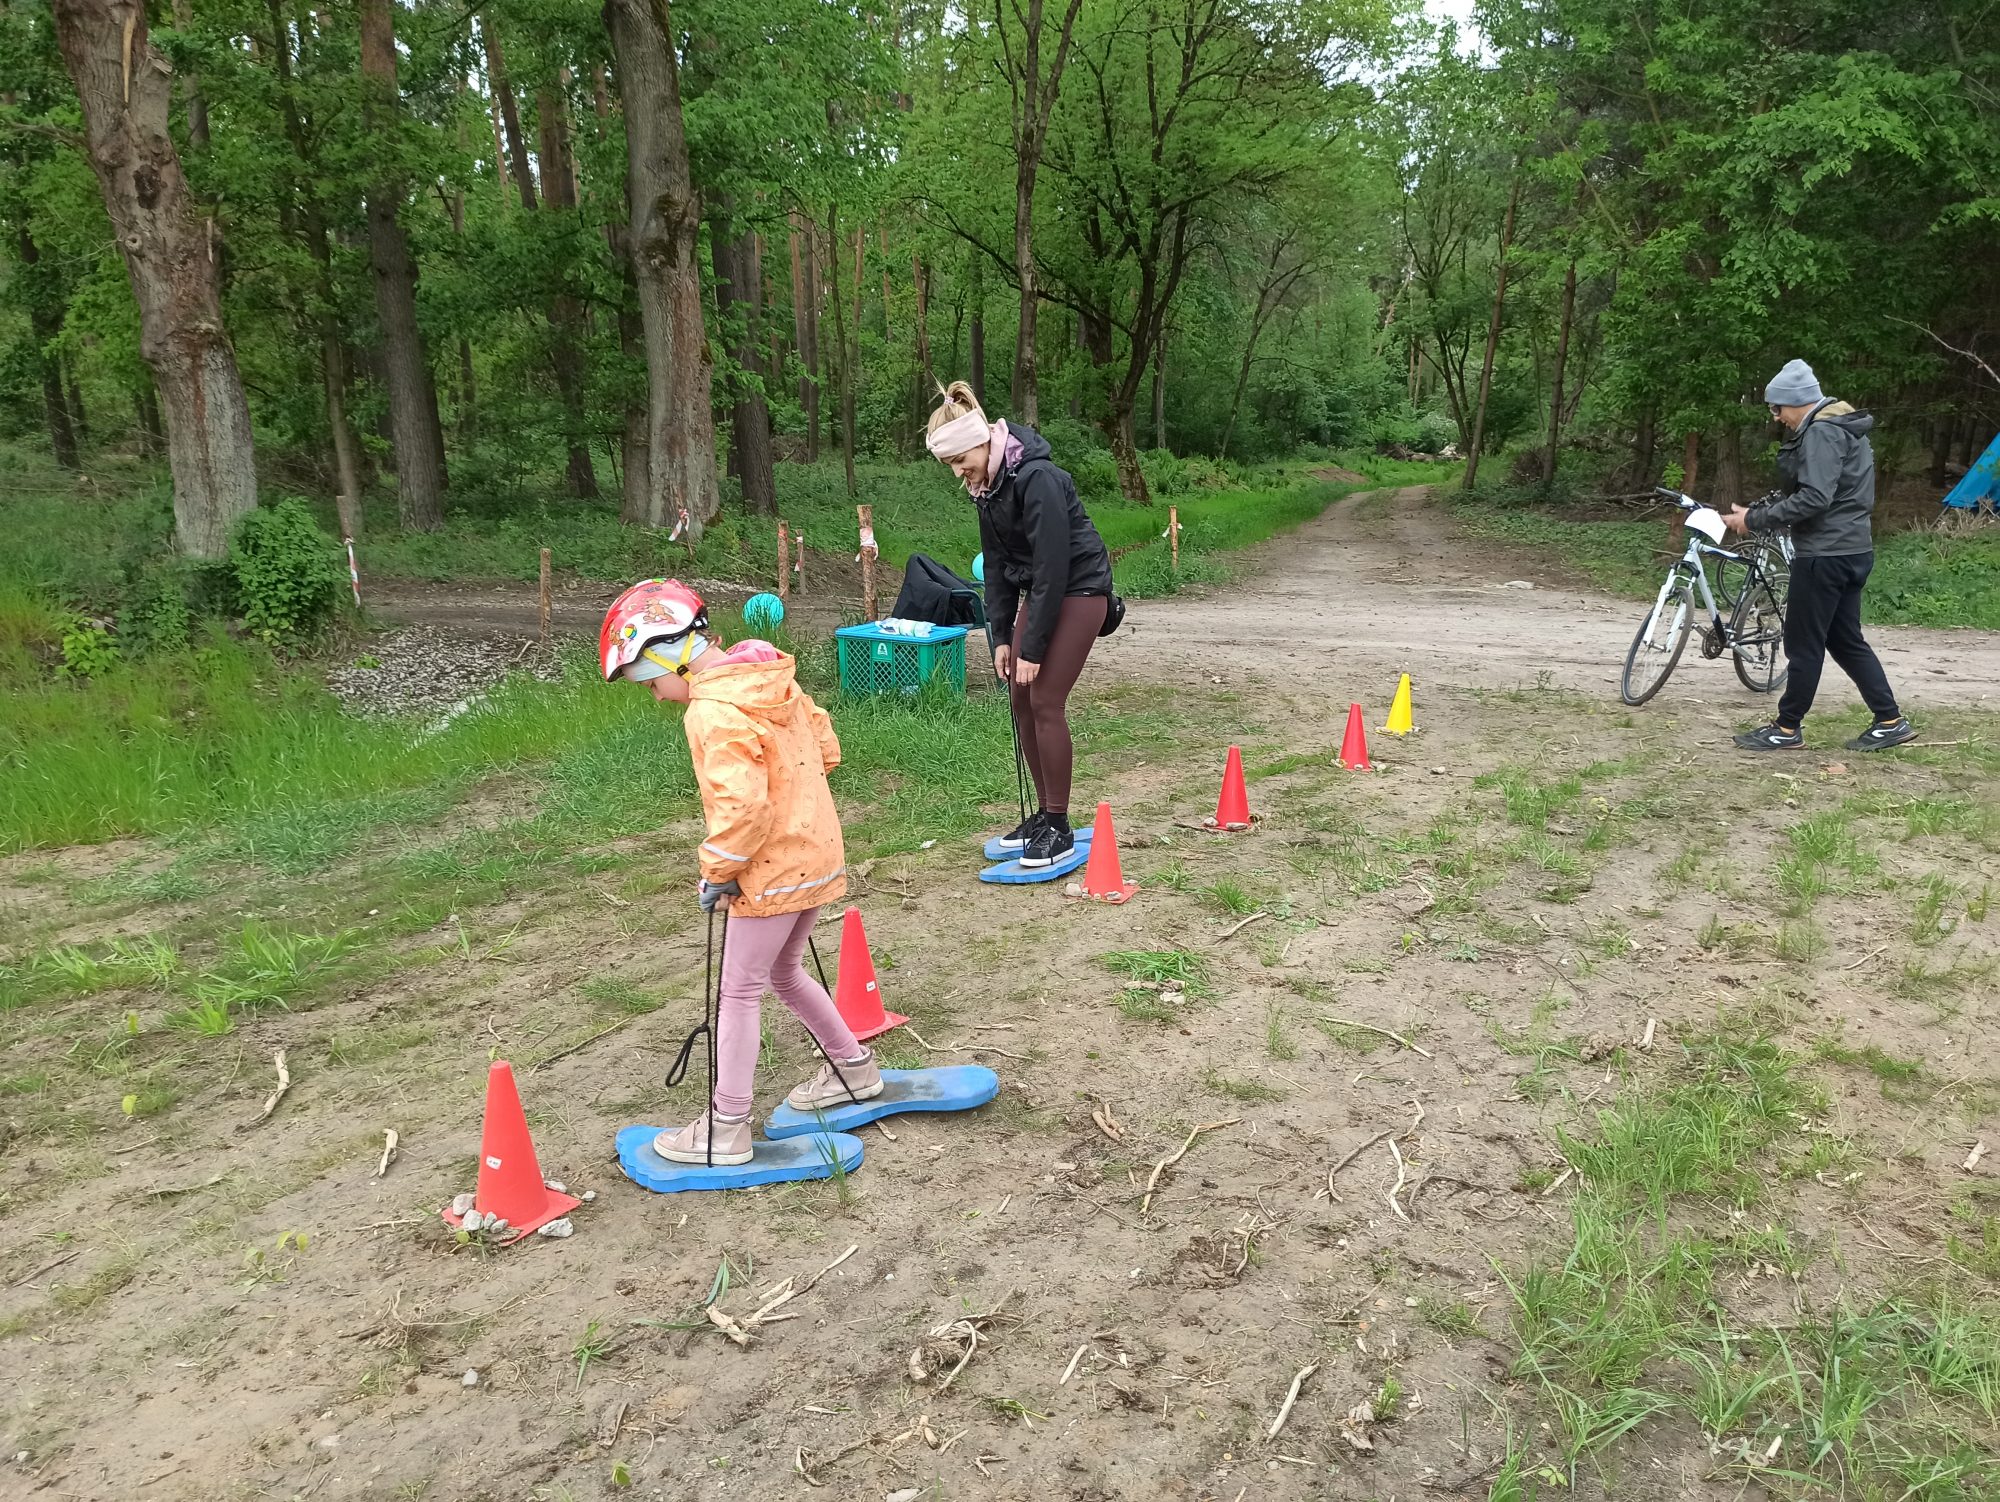 Na zdjęciu 3 osoby - kobieta, mężczyzna i dziewczynka. Kobieta i dziewczynka idą slalomem z wykorzystaniem dużych stóp, które podnoszą poprzez pociąganie za sznurki. Za nimi mężczyzna stojący przy rowerach i las.